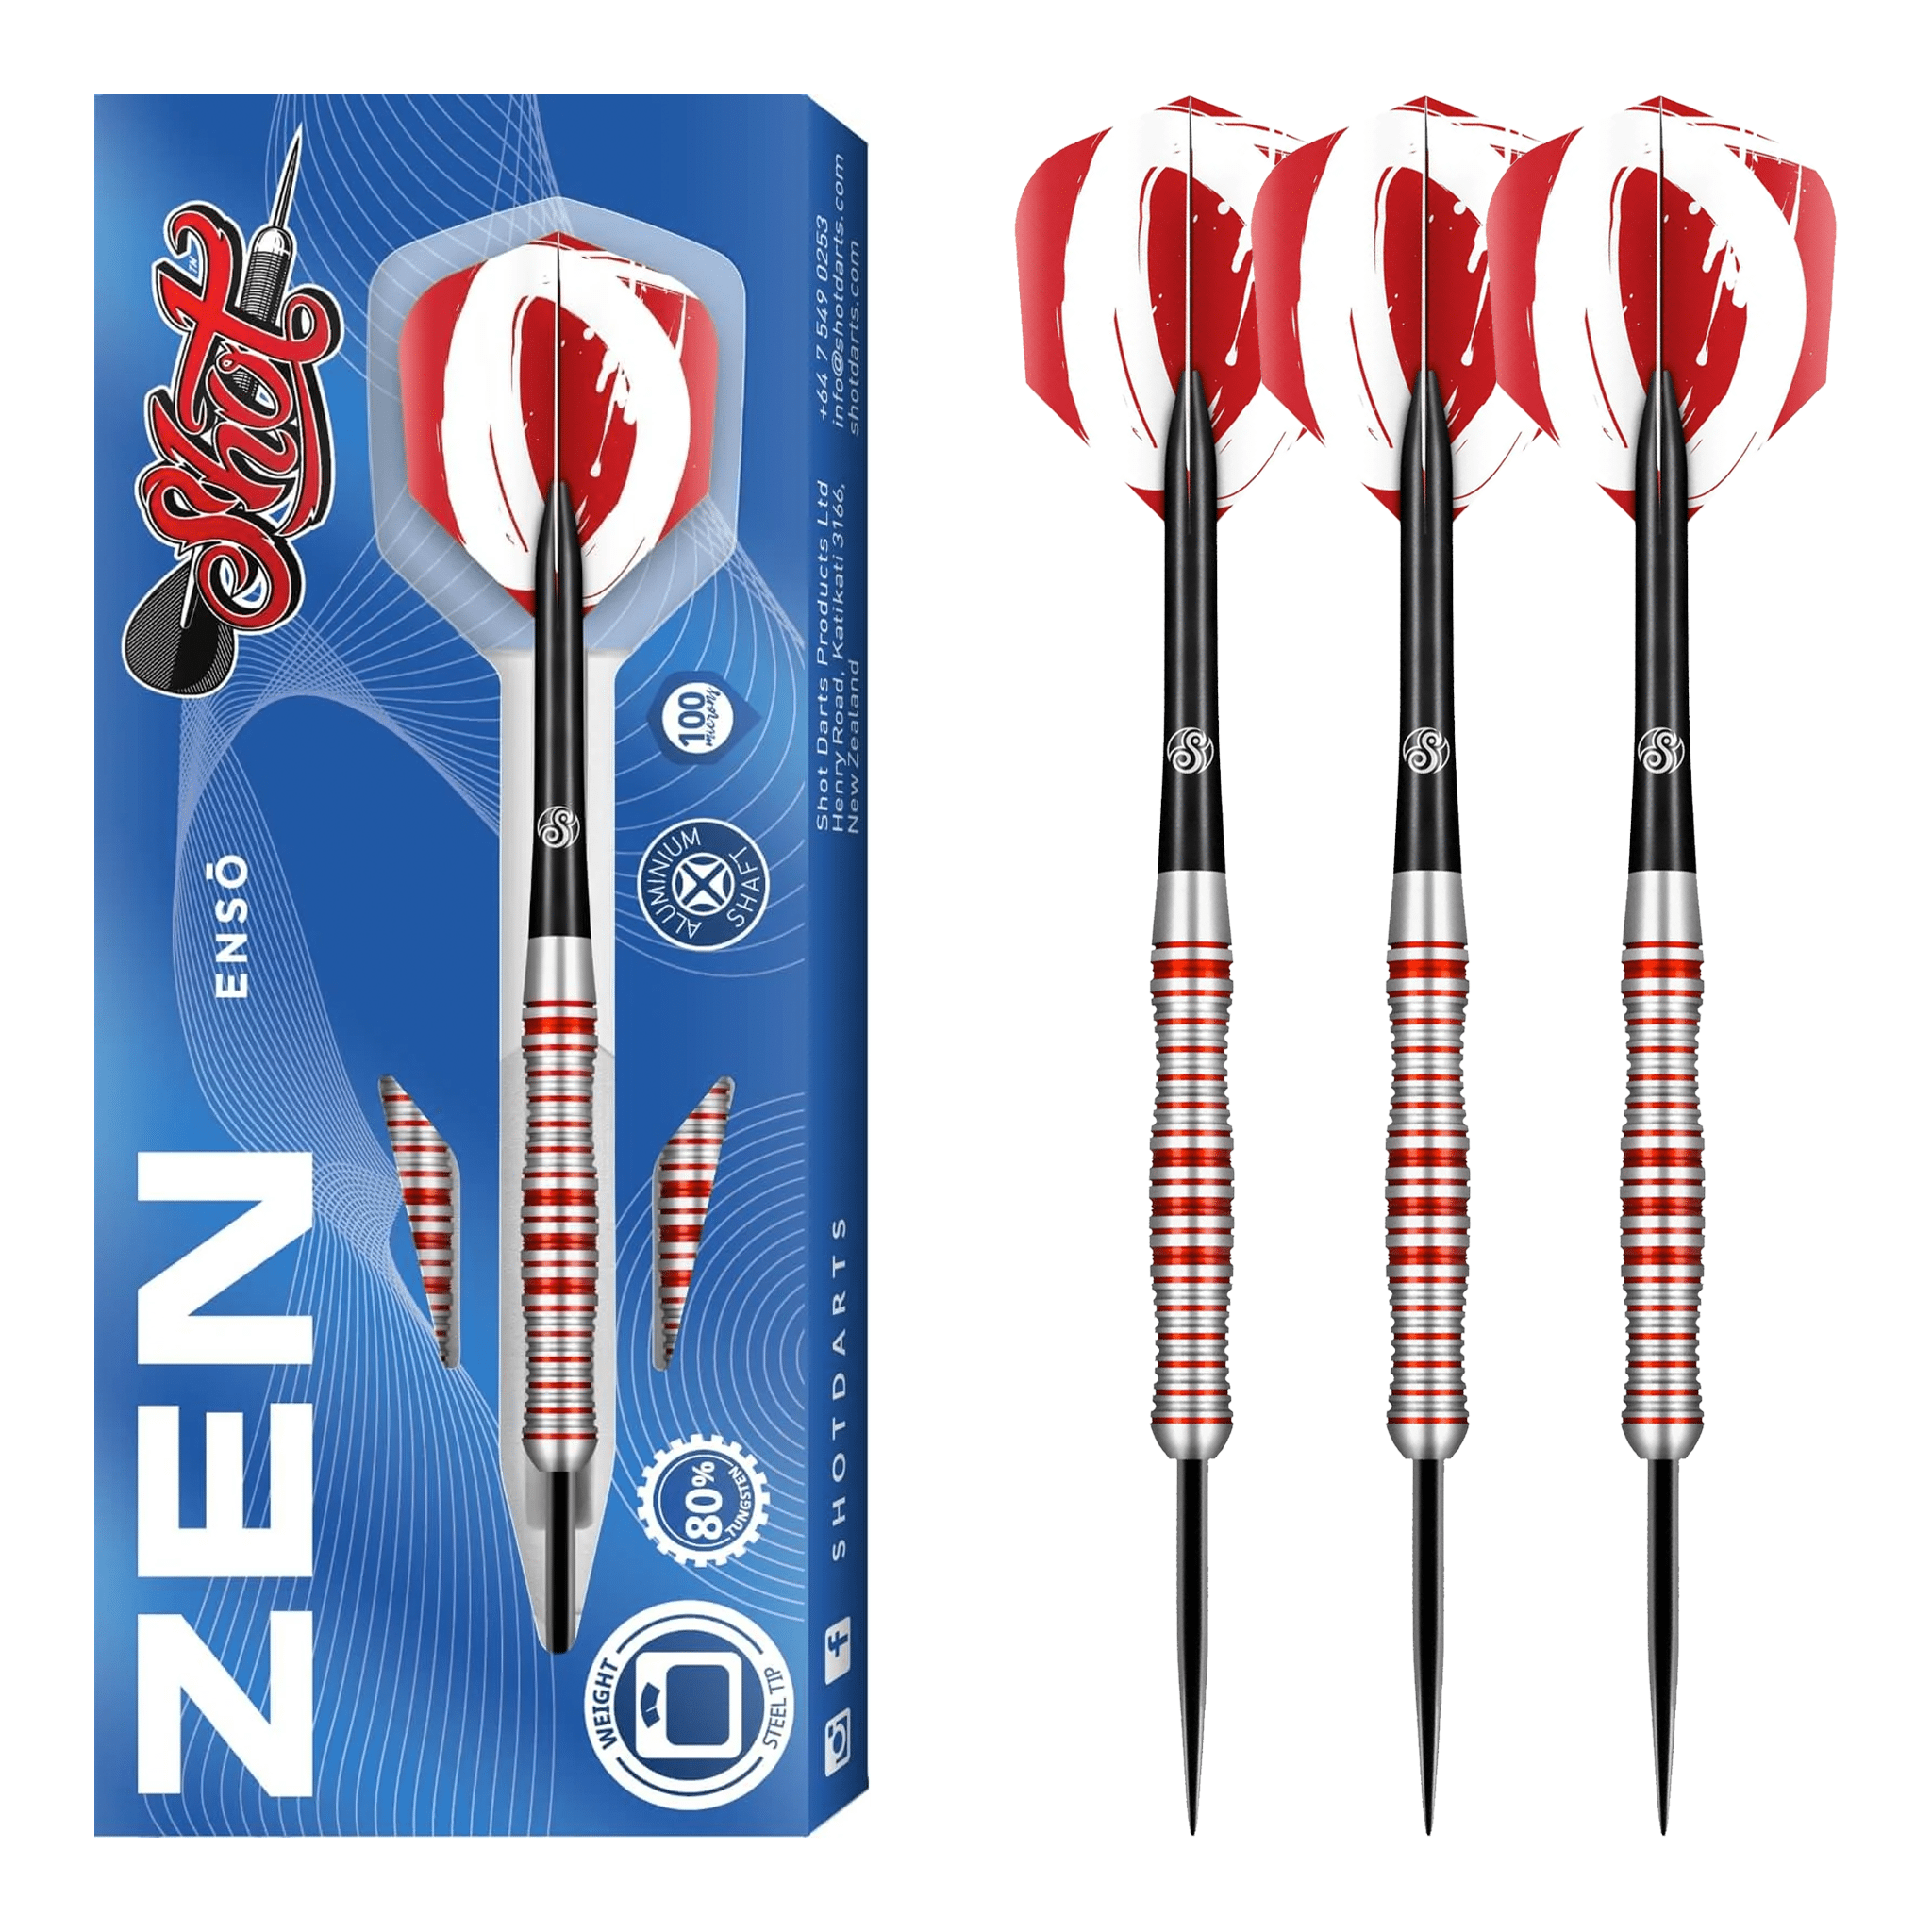 Shot Zen Enzo - 80% Tungsten Steel Tip Darts Darts